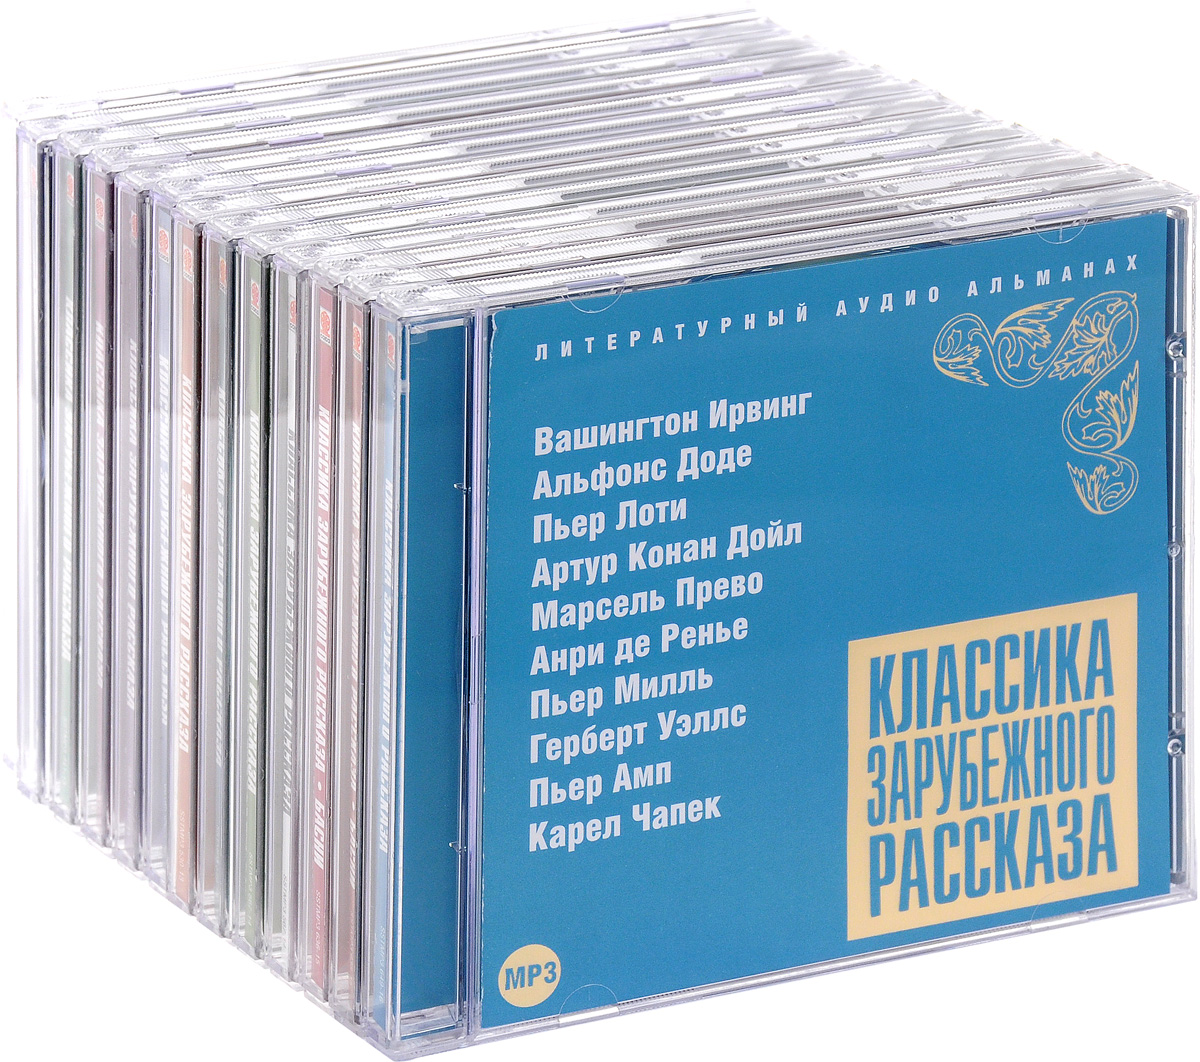 Классика зарубежного рассказа (комплект из 13 аудиокниг МР 3 на 13 CD)